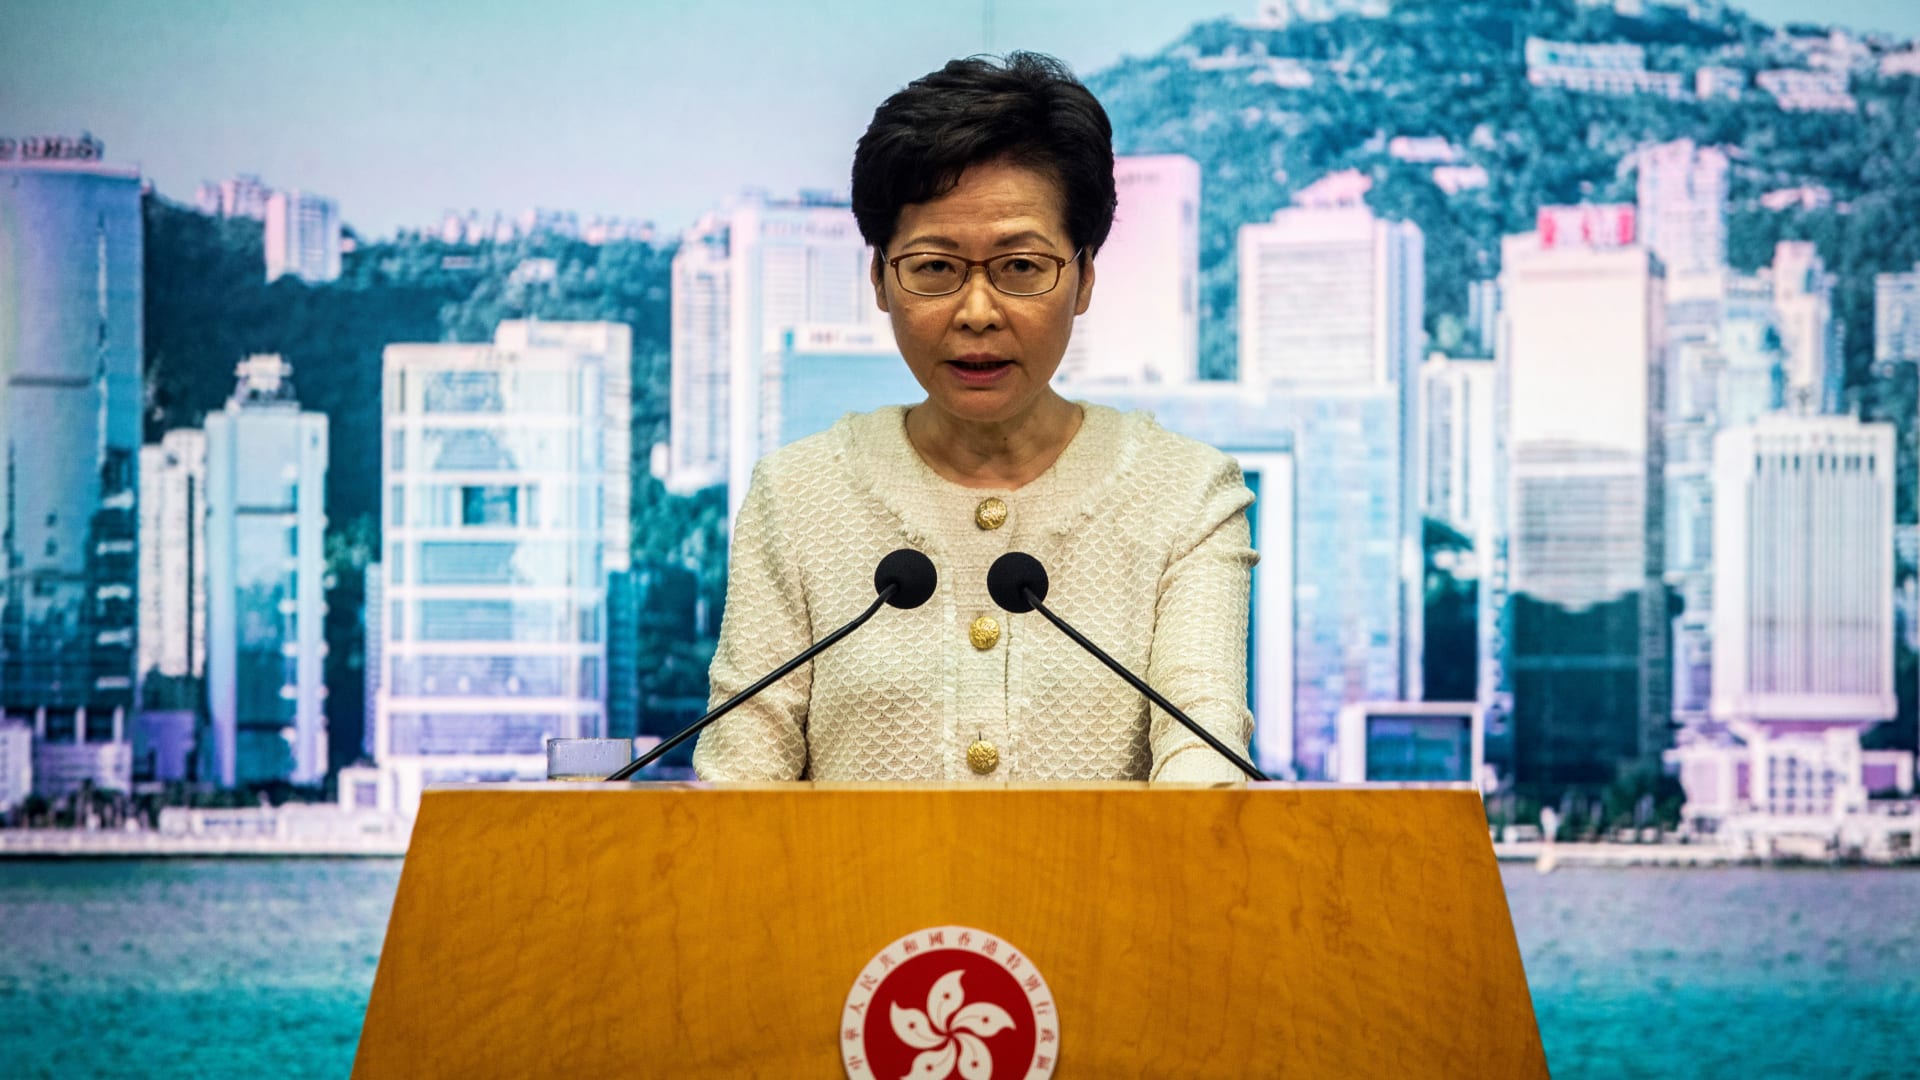 احتجاجات هونغ كونغ تعود من جديد ضد مشروع قانون "الأمن القومي"